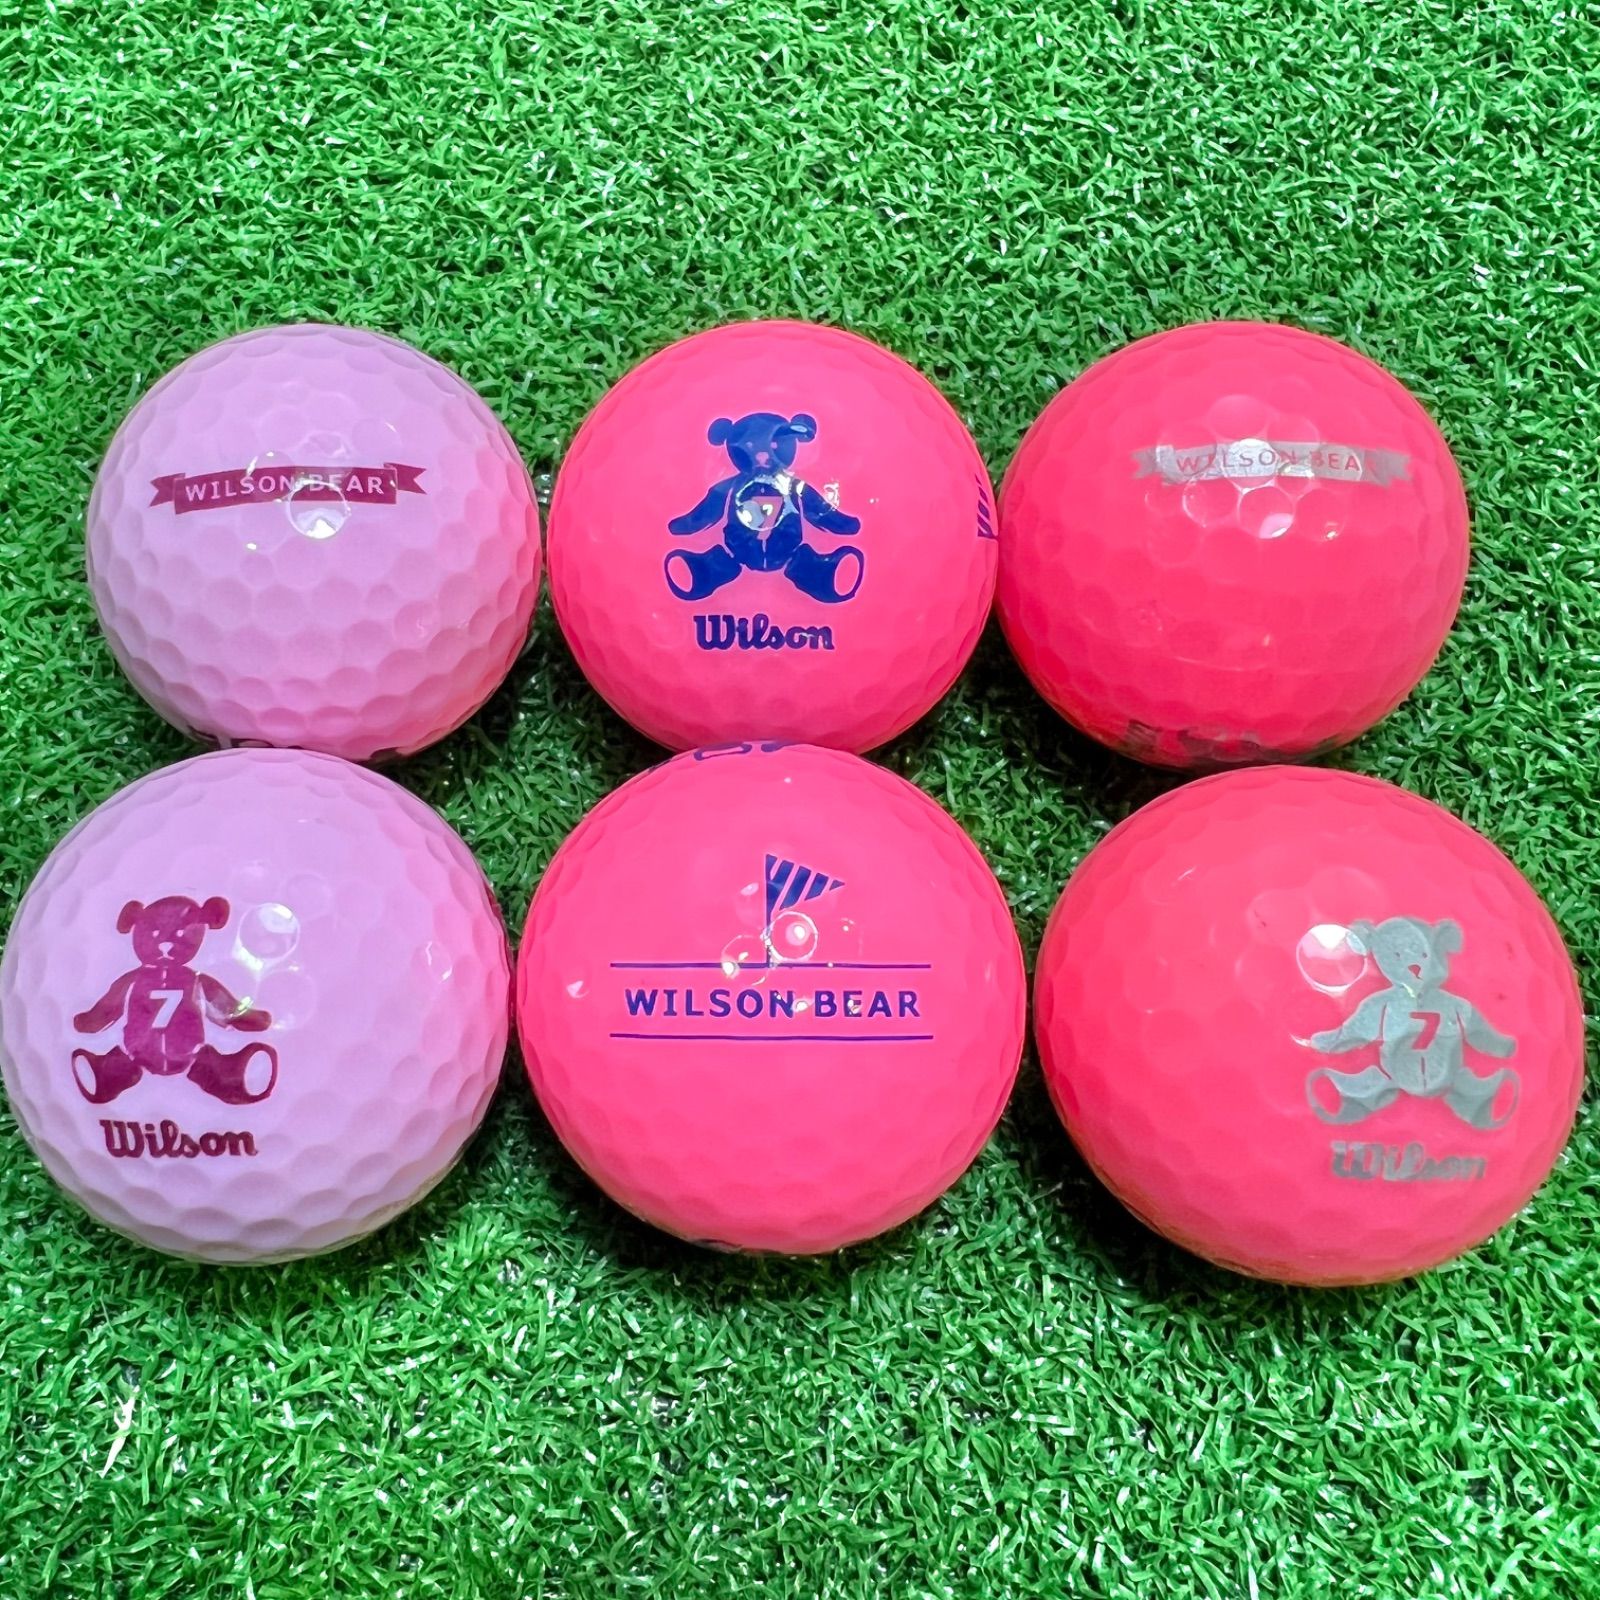 魅力的な価格 ロストボール ピンク系20球